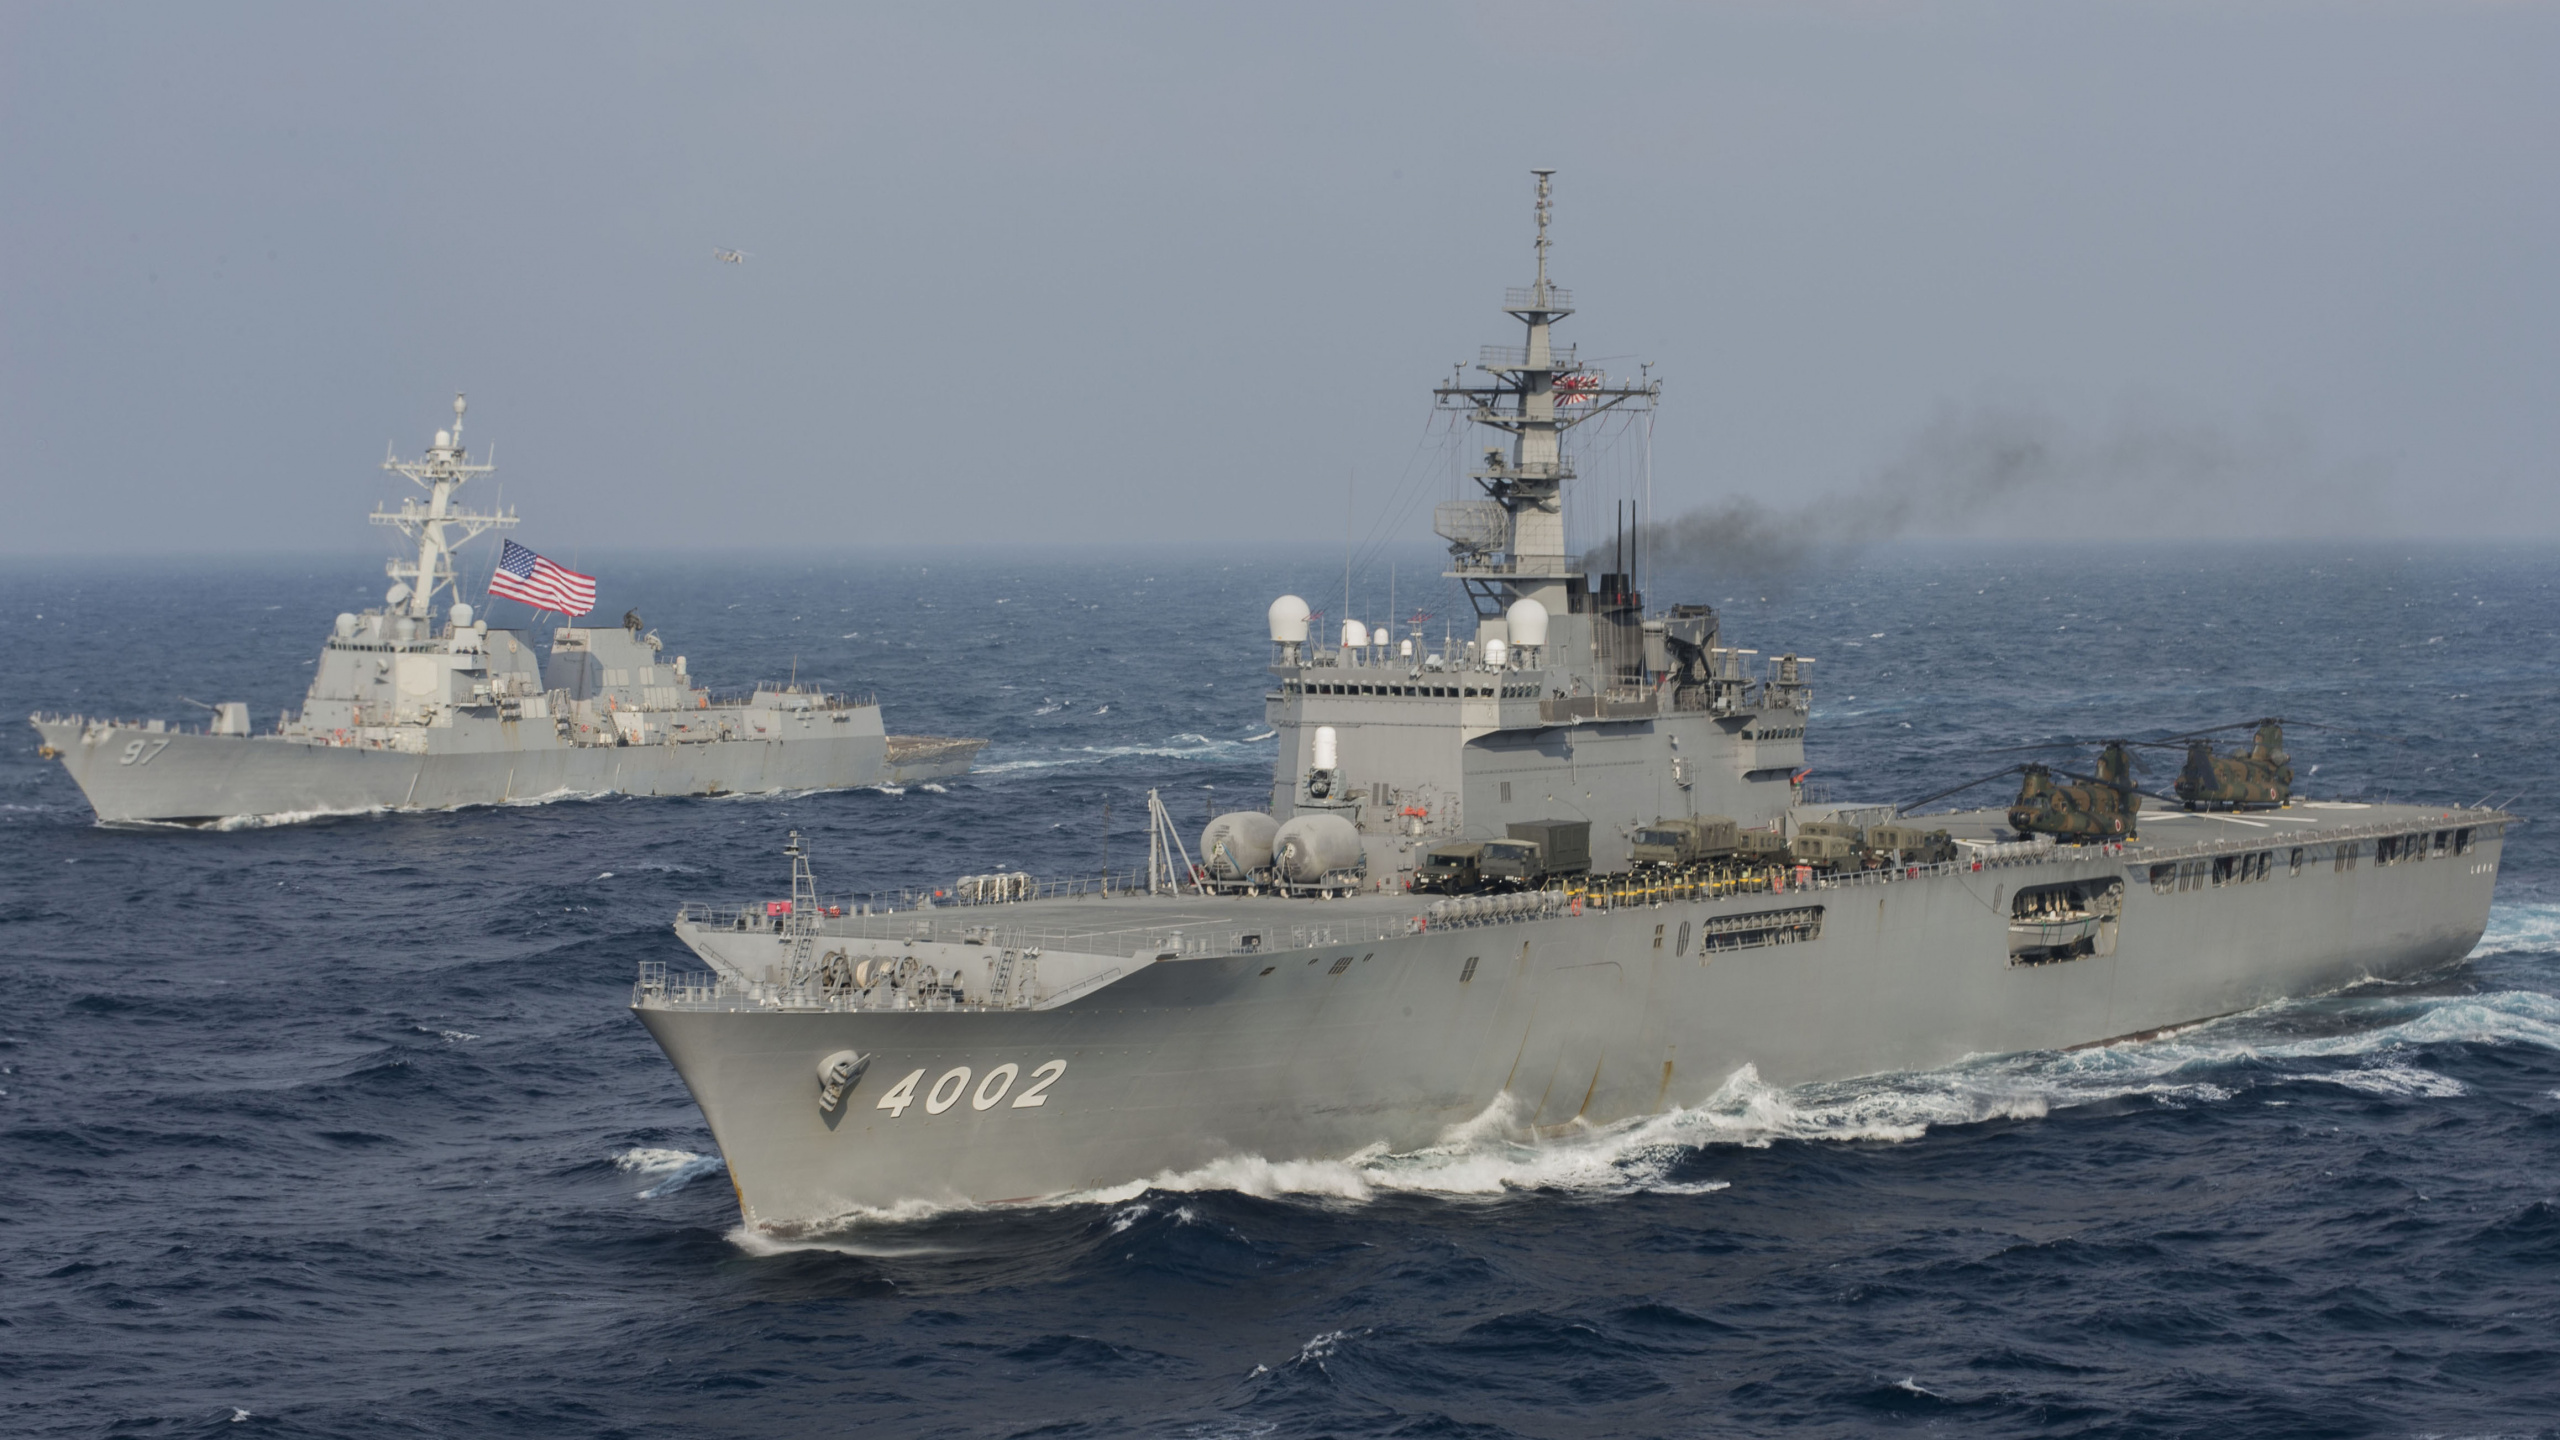 USS Halsey DDG-97, Japanische Maritime Selbstverteidigungsstreitkräfte, Kriegsschiff, Marine, Zerst. Wallpaper in 2560x1440 Resolution